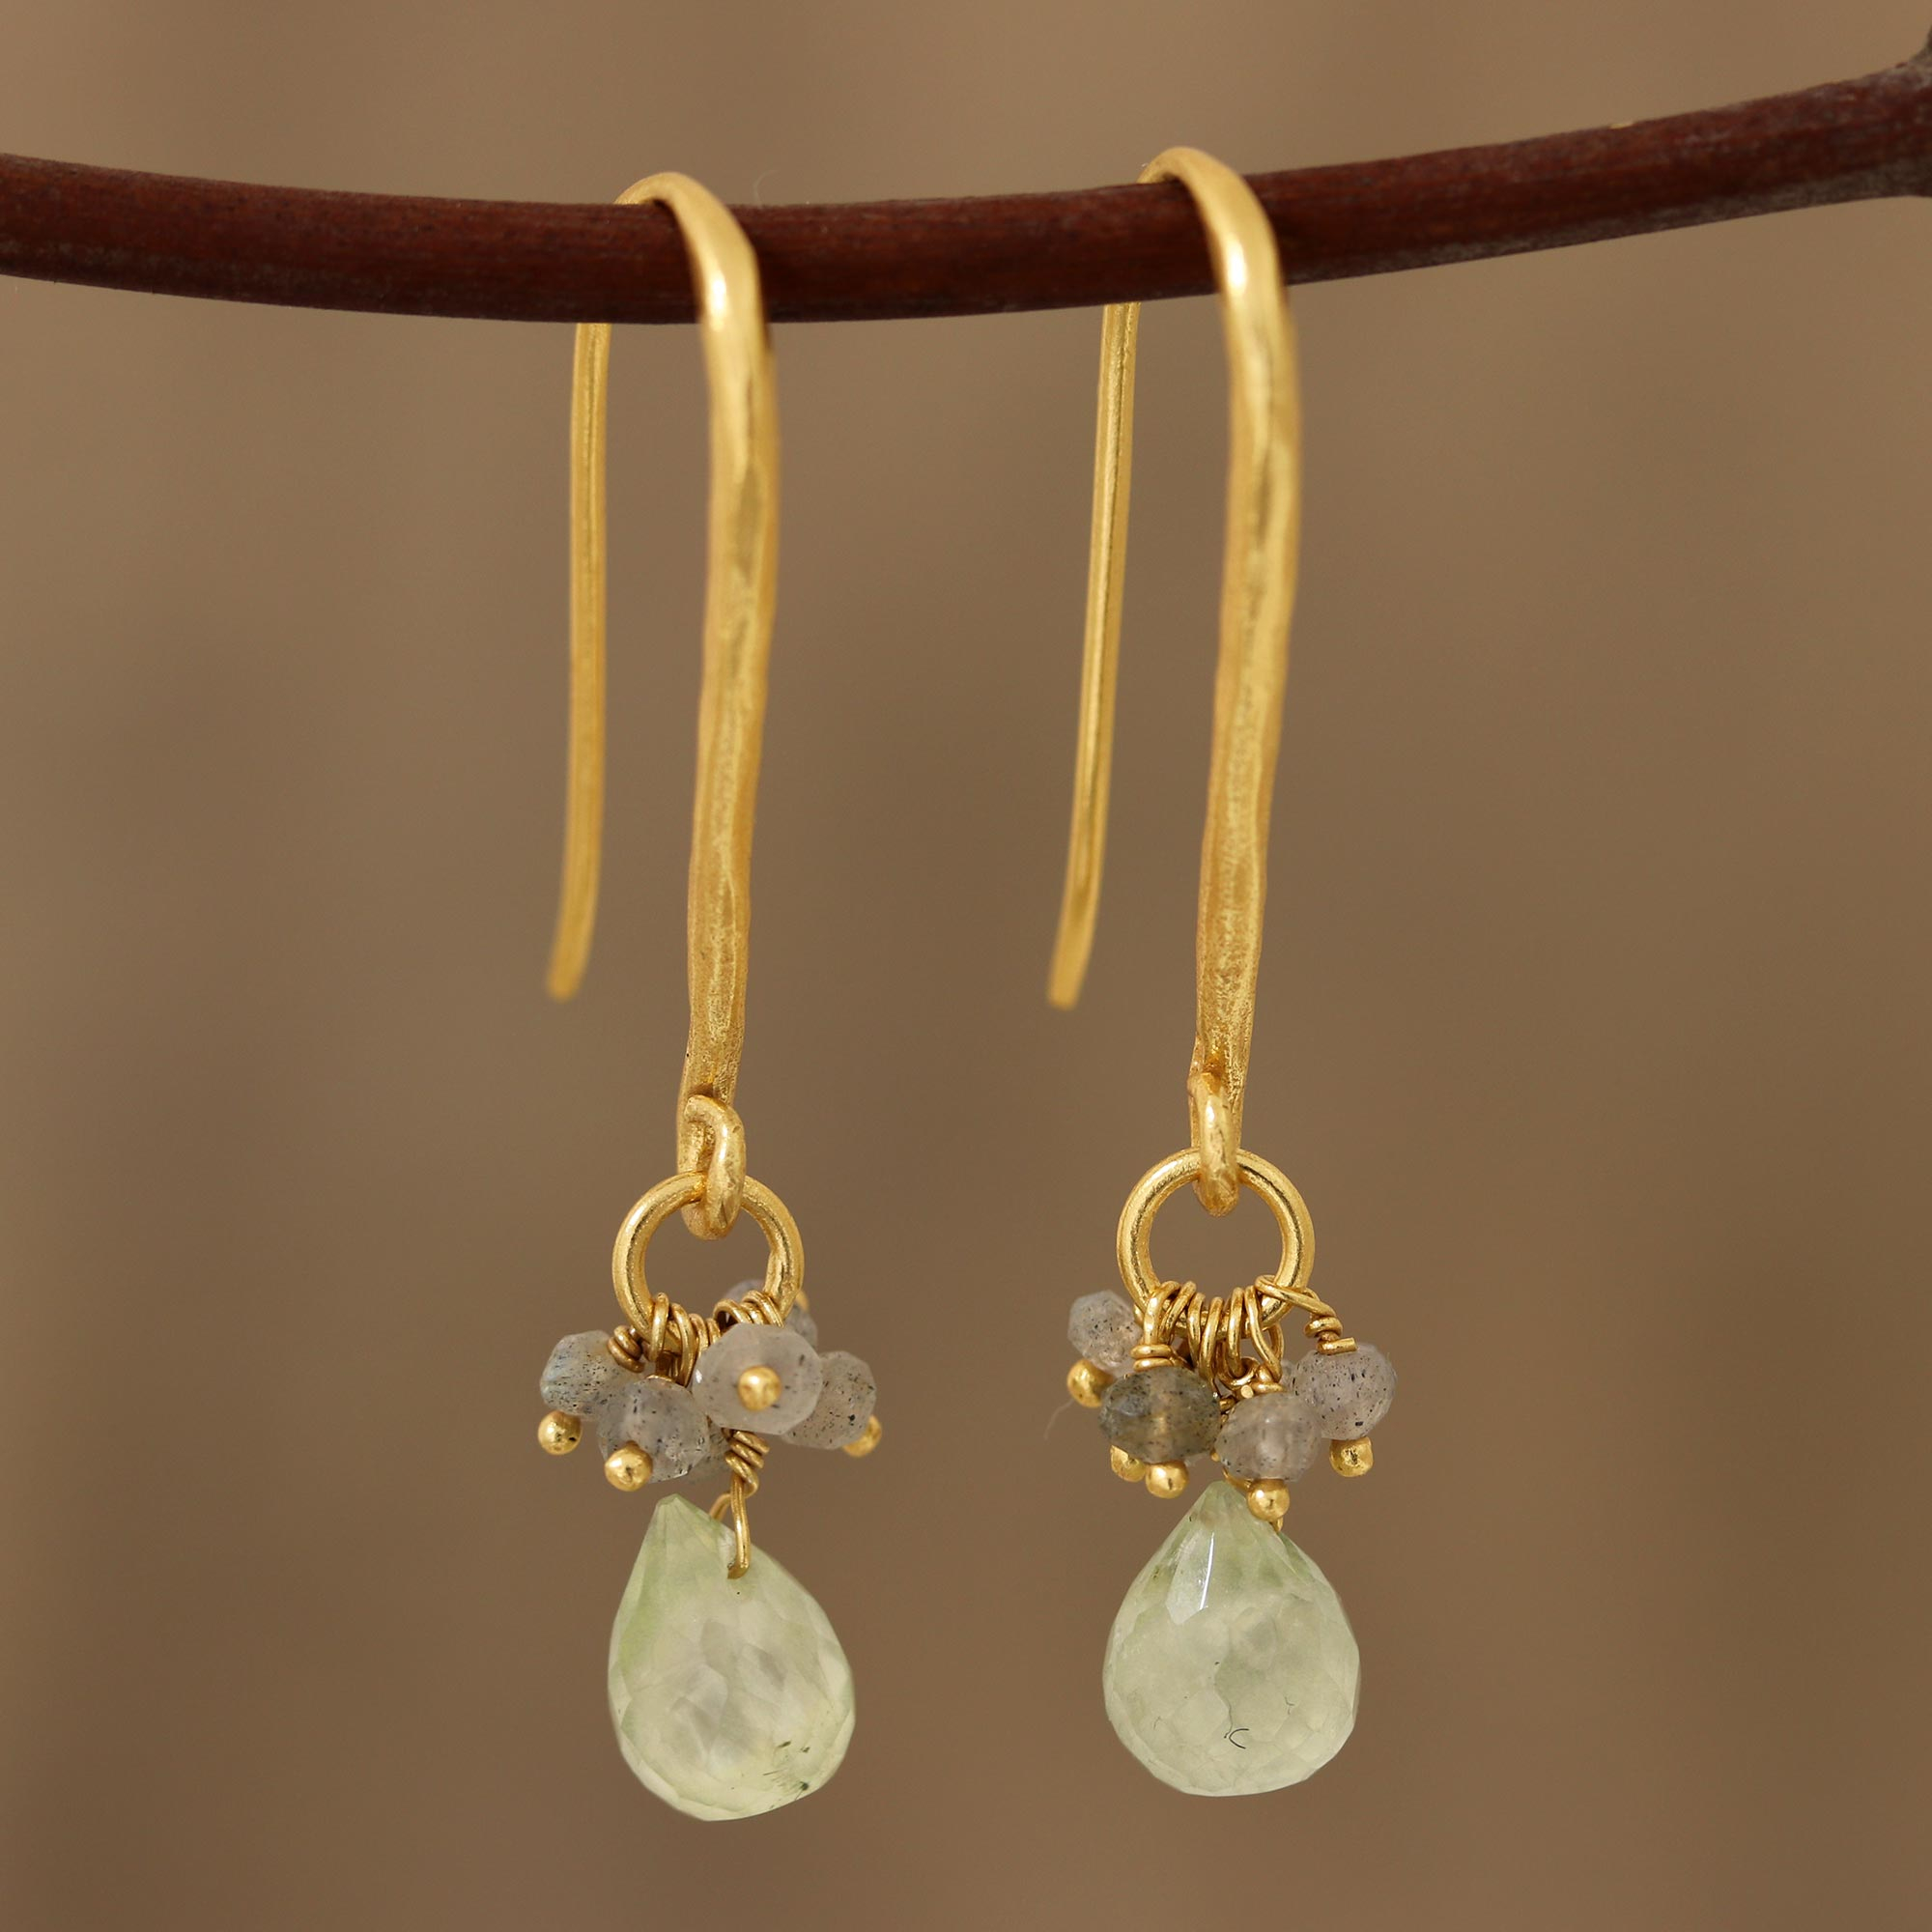 boho earrings French hook earrings earrings gifts for her Labradorite jewelry Labradorite jewelry labradorite emerald earrings